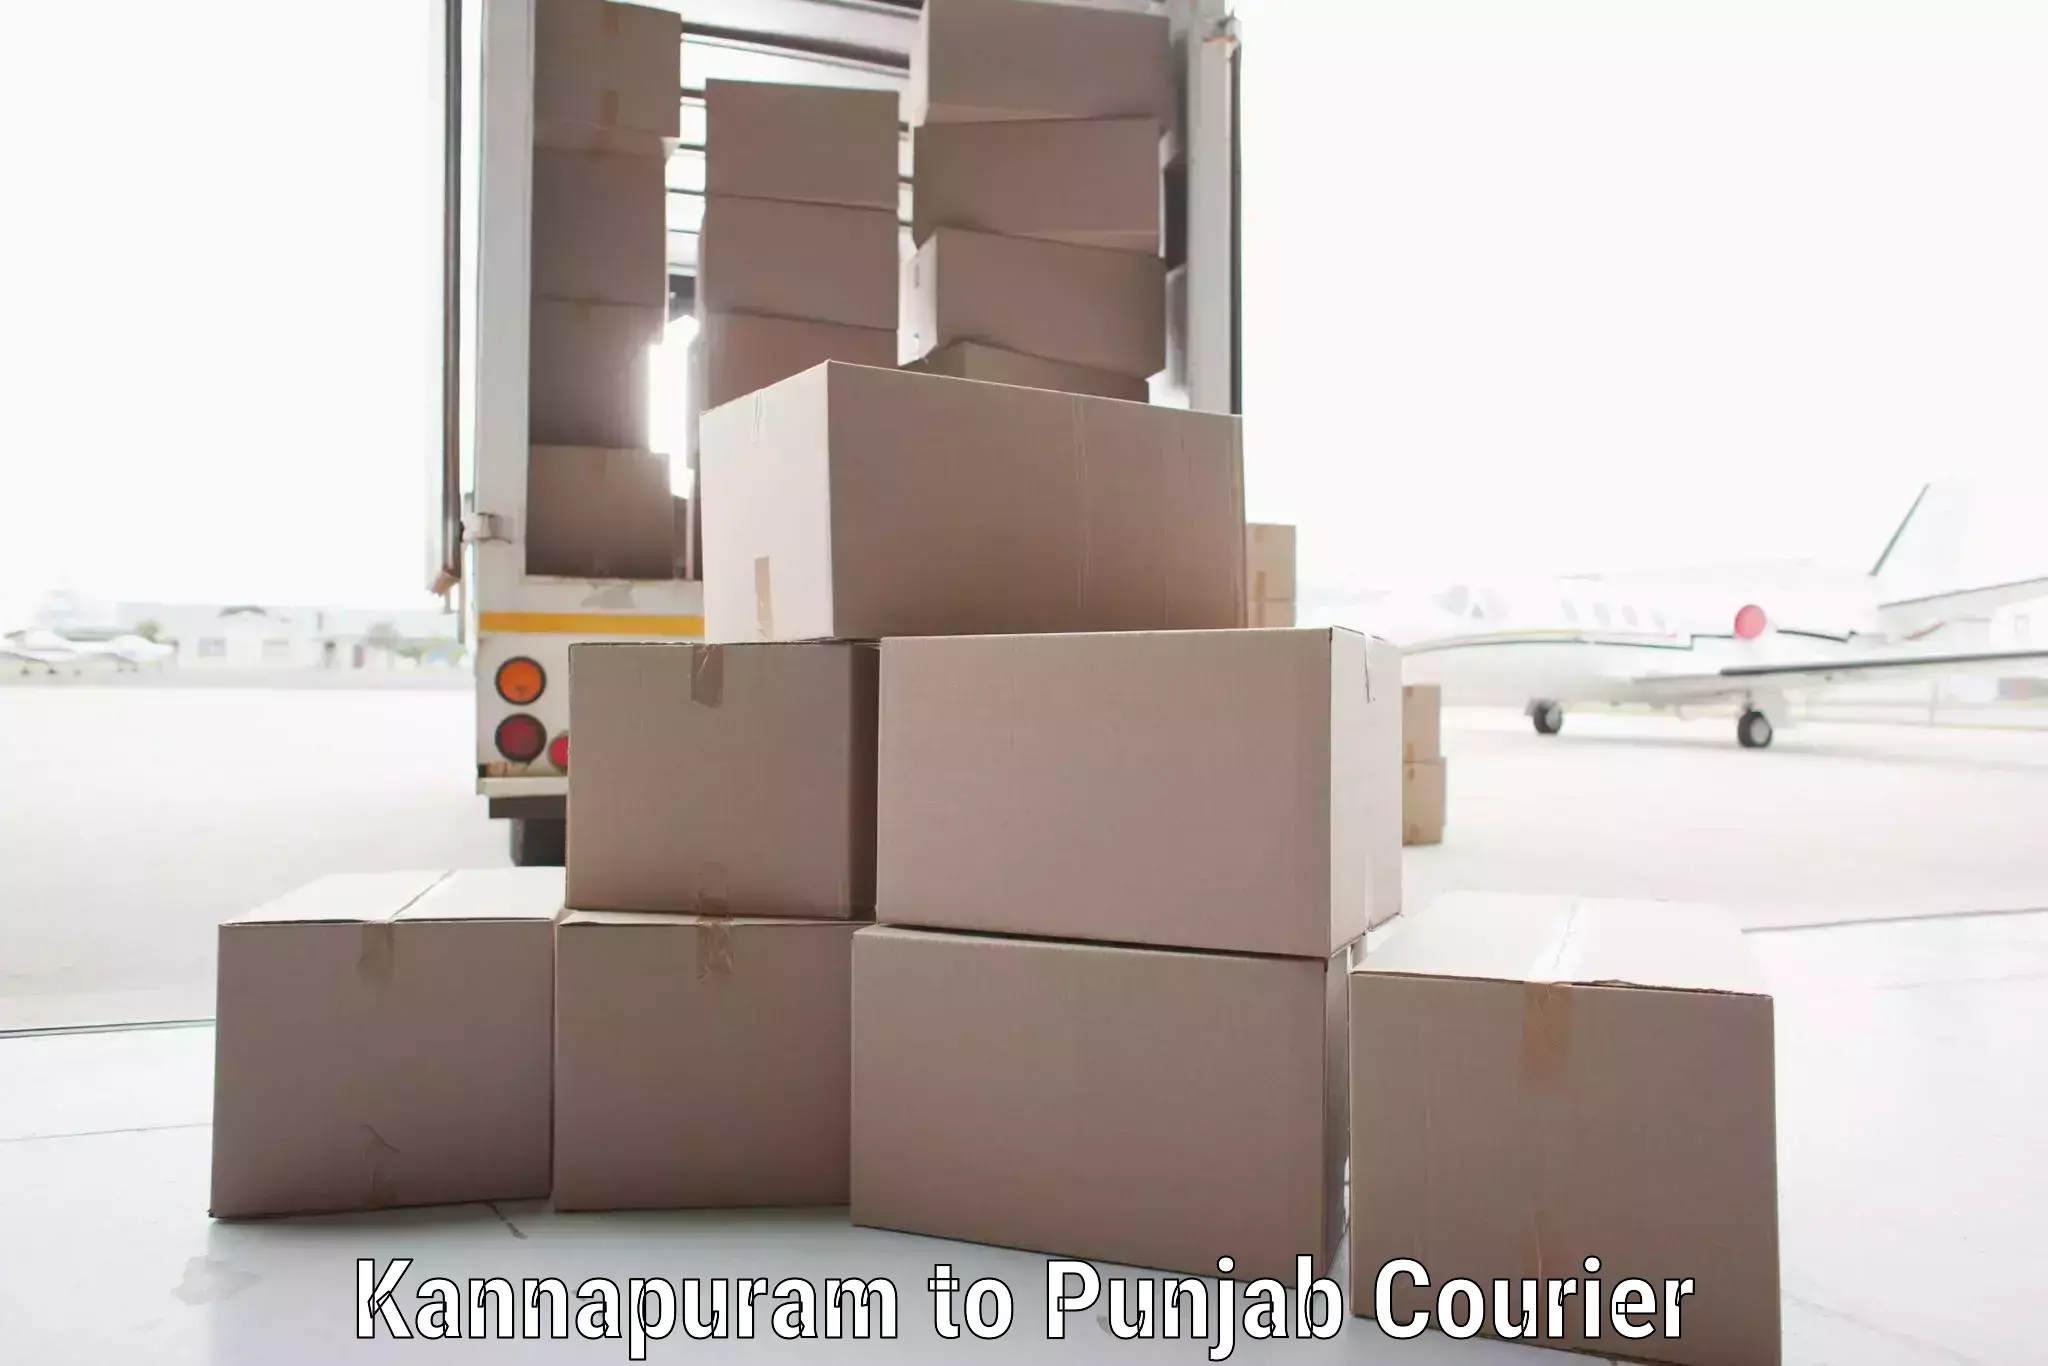 Local courier options Kannapuram to Mandi Gobindgarh